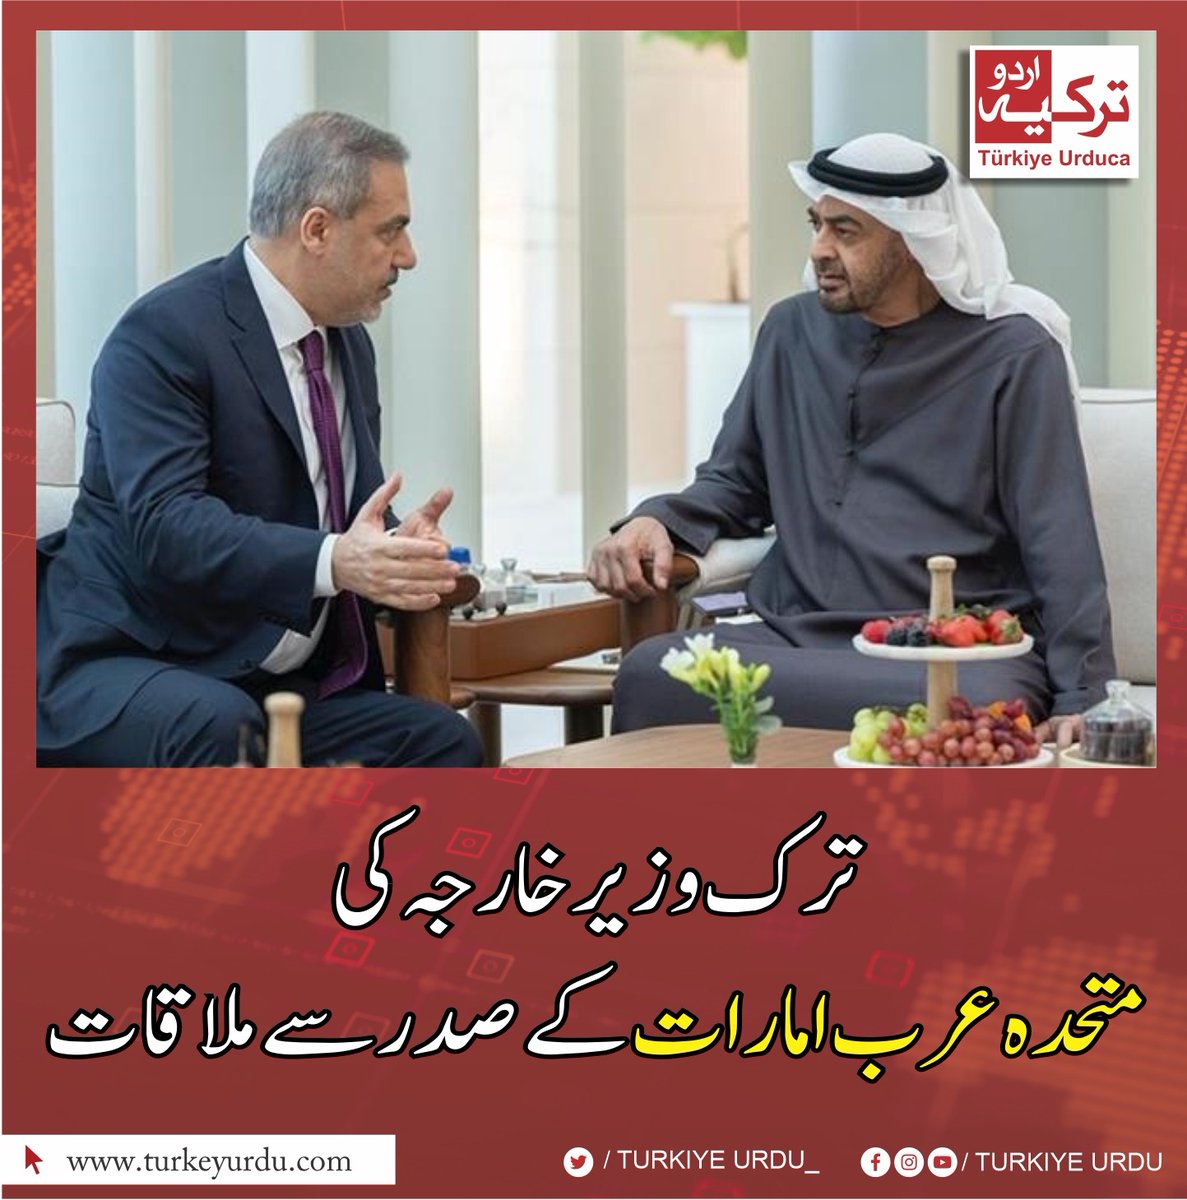 ⭕ ترک وزیر خارجہ حاقان فیدان نے متحدہ عرب امارات کے صدر شیخ محمد بن زید النہیان سے ابو ظہبی میں ملاقات کی۔ ملاقات میں غزہ کی صورتحال ، جنگ بندی اور دیگر اہم امور پر تبادلہ خیال کیا گیا۔